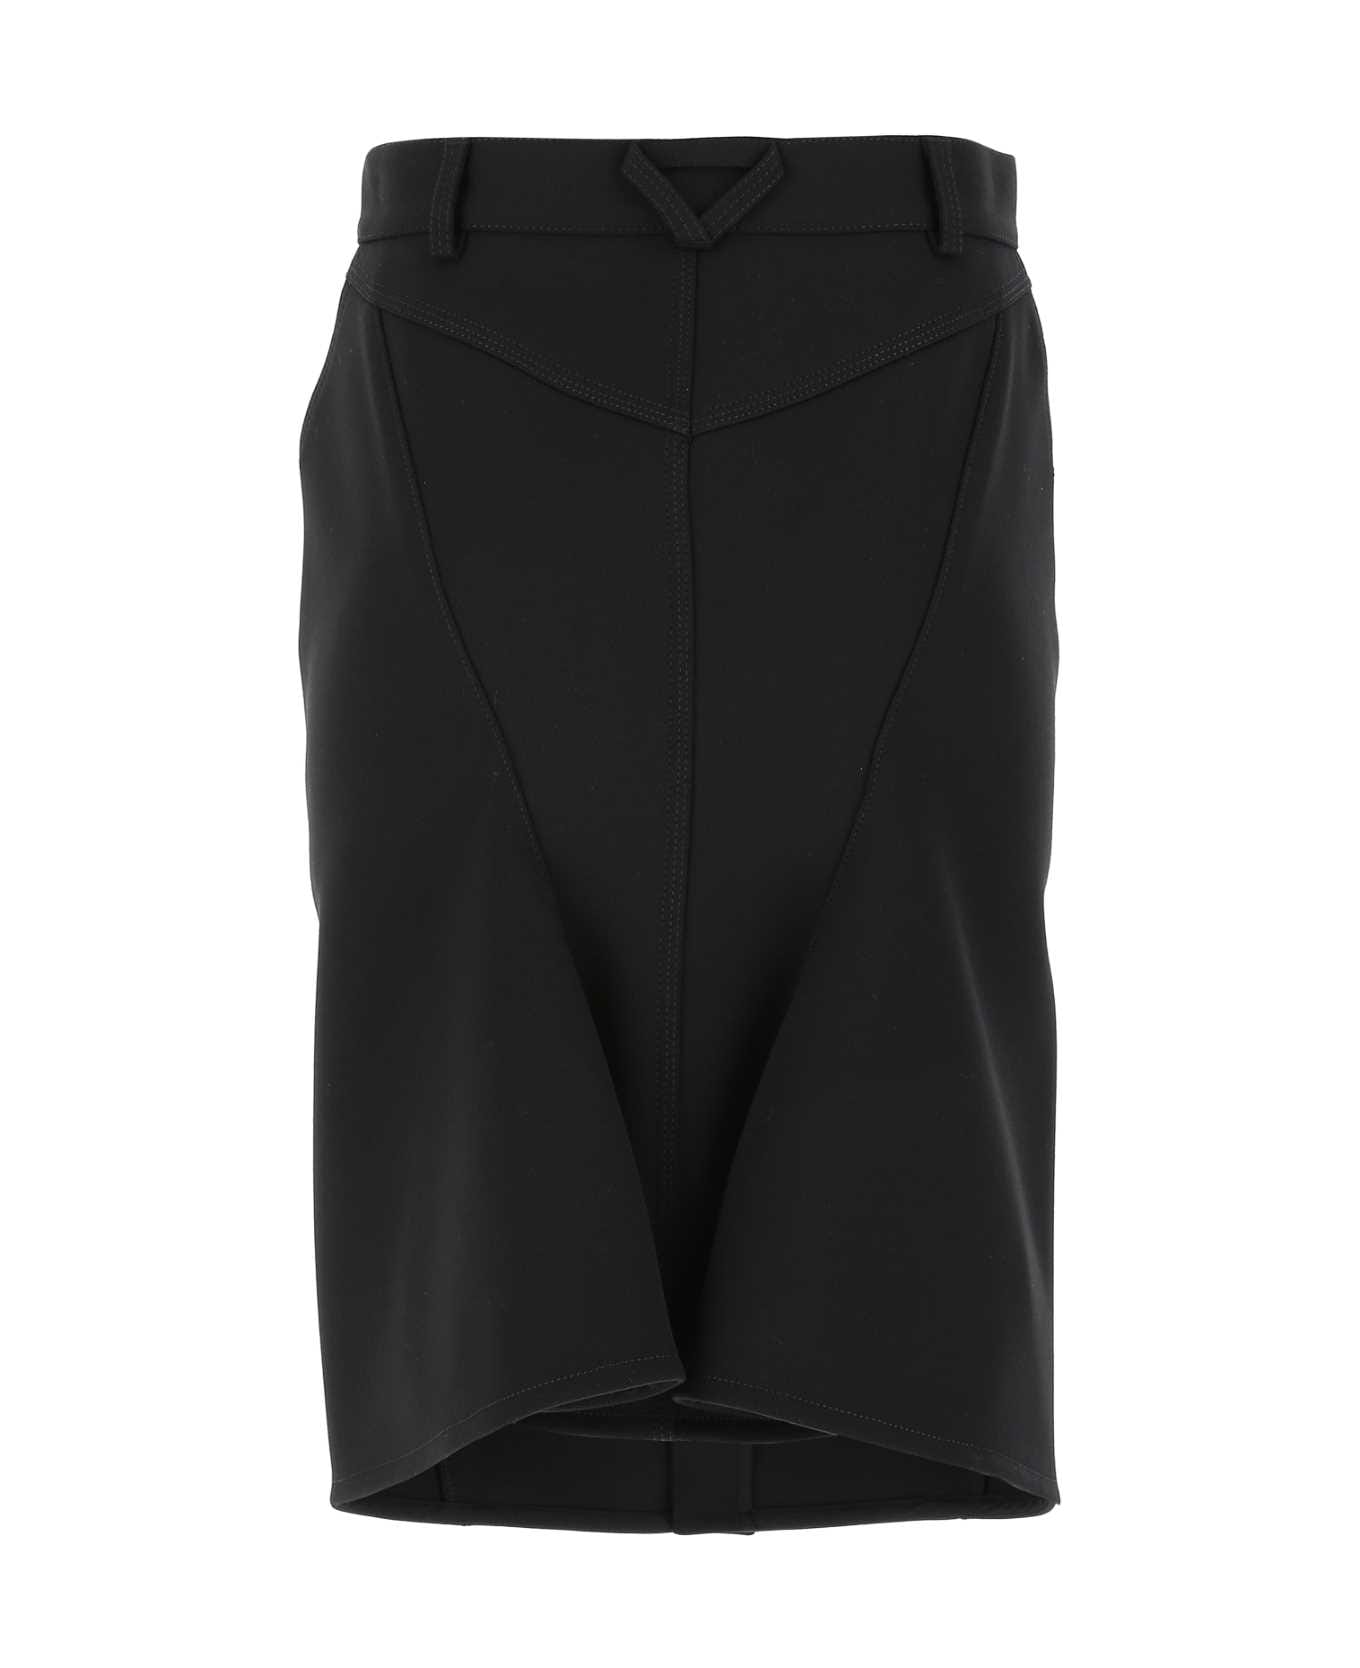 Bottega Veneta Black Stretch Wool Blend Skirt - 1000